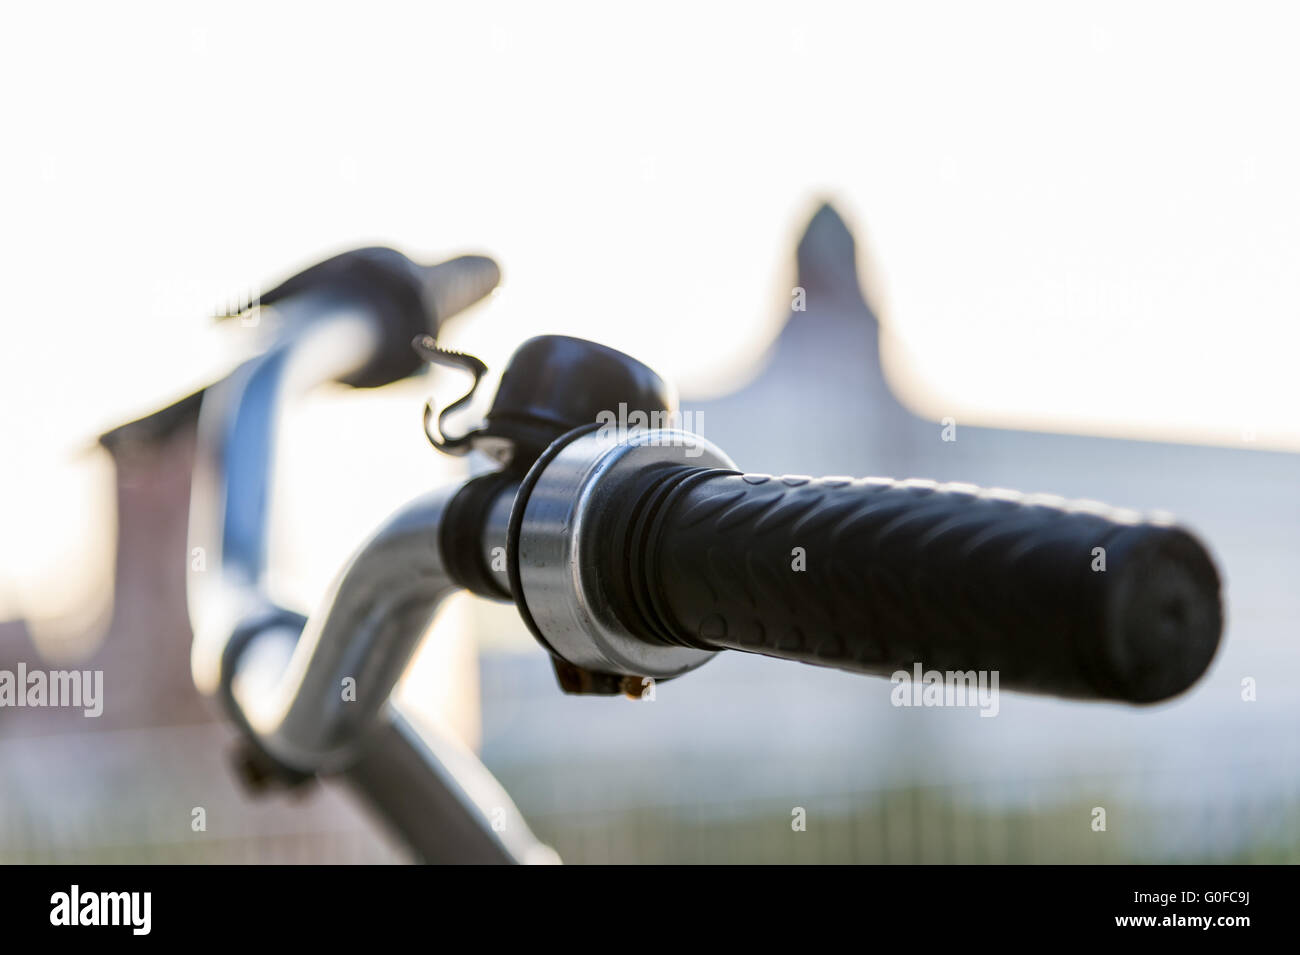 Fahrradlenker mit Klingeln in die diffuse Beleuchtung. Stockfoto